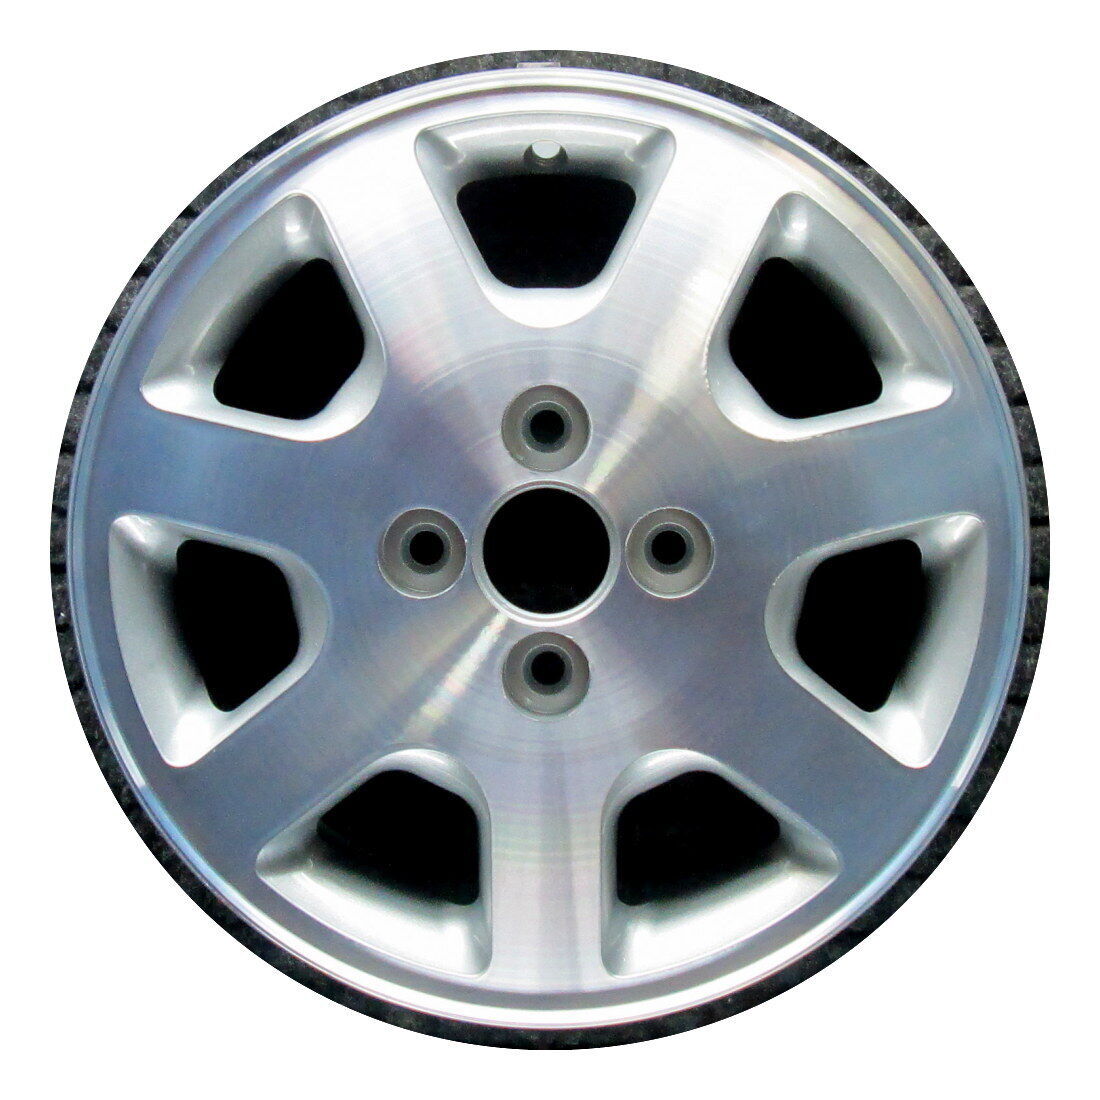 Wheel Rim Kia Sephia Spectra 14 1998-2001 K9965645540 OEM Factory OE 74542